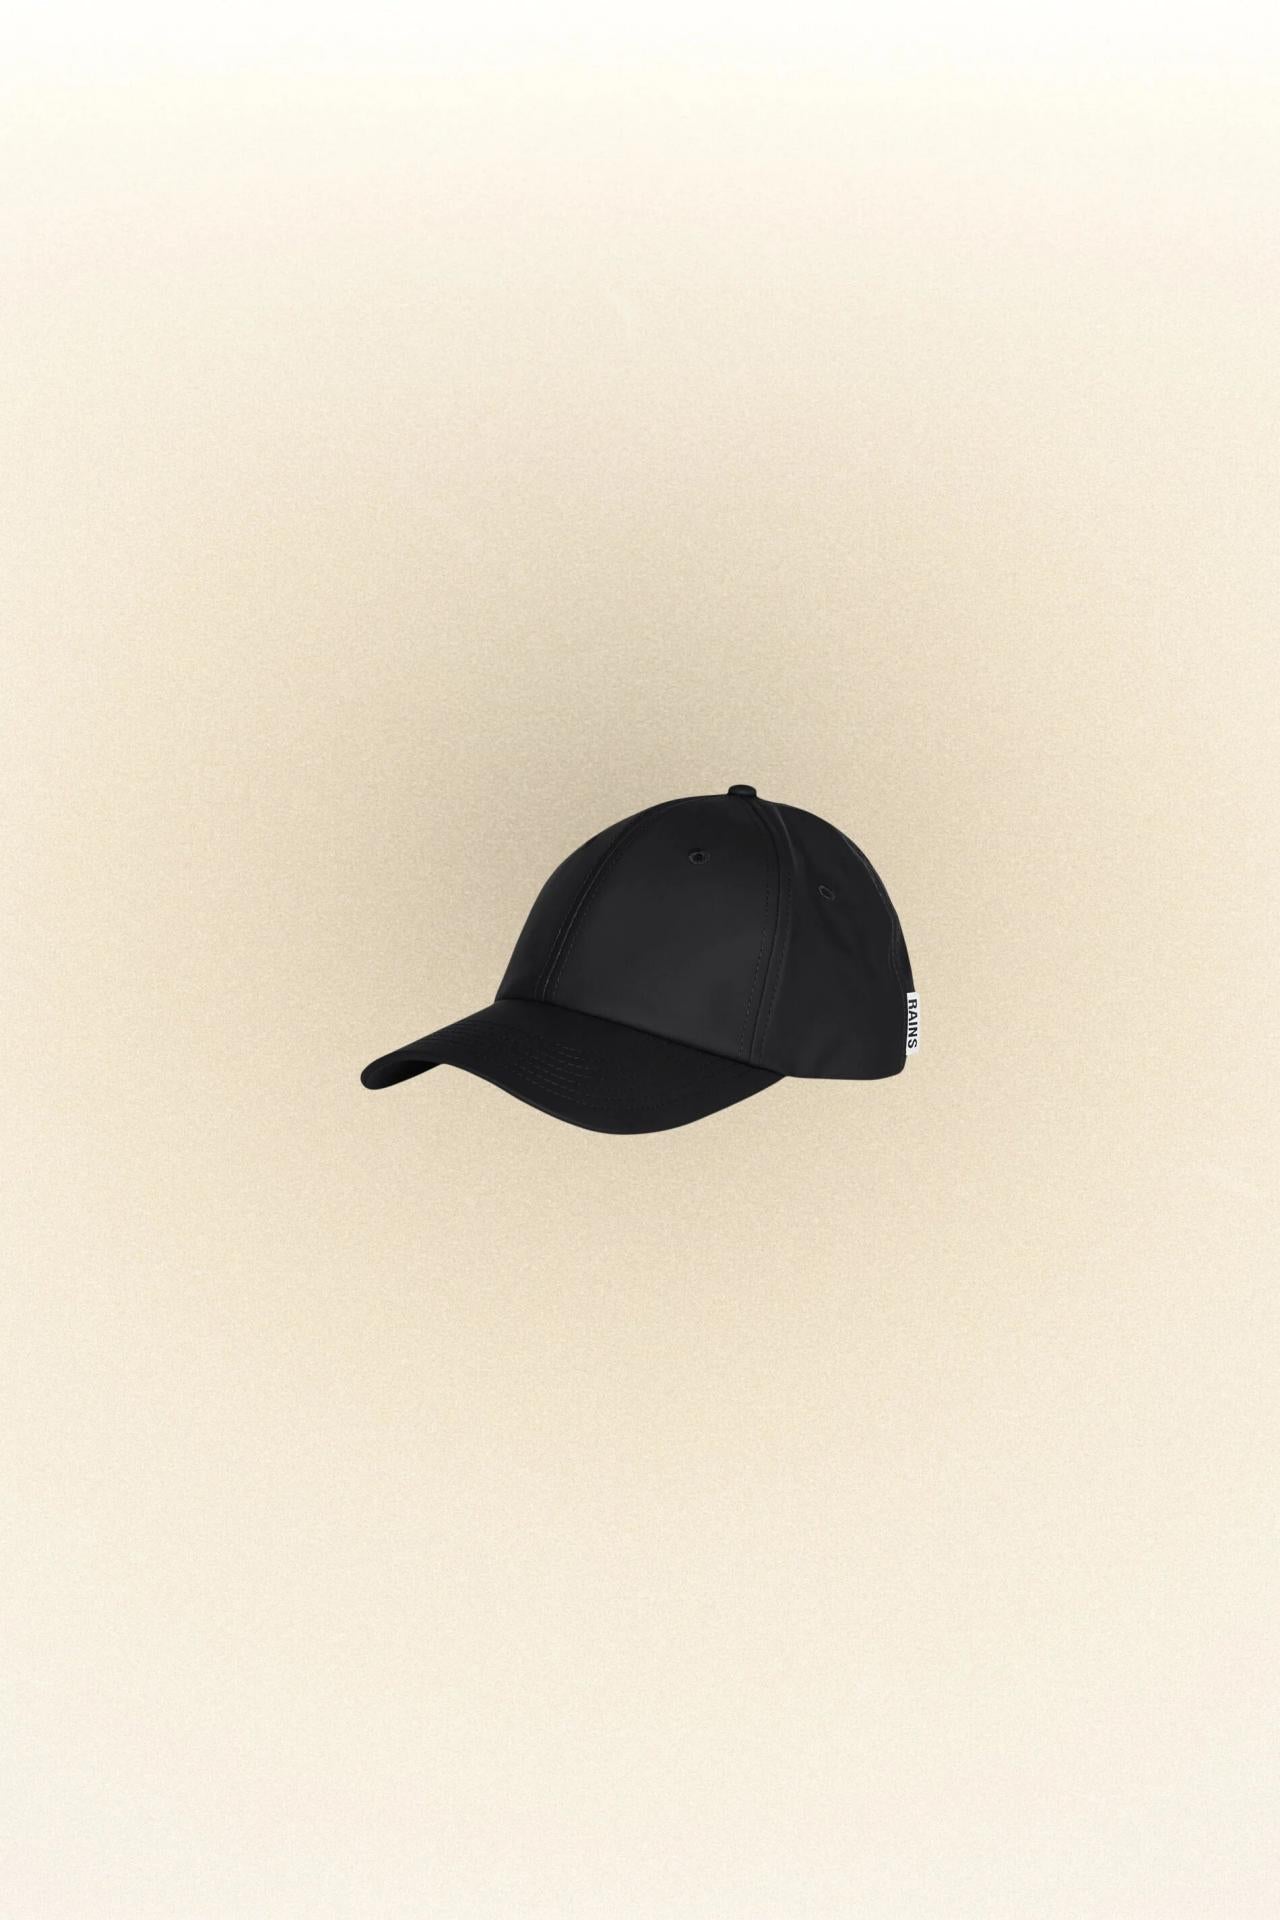 Rains Baseballkappe Cap One size - Variante: schwarz